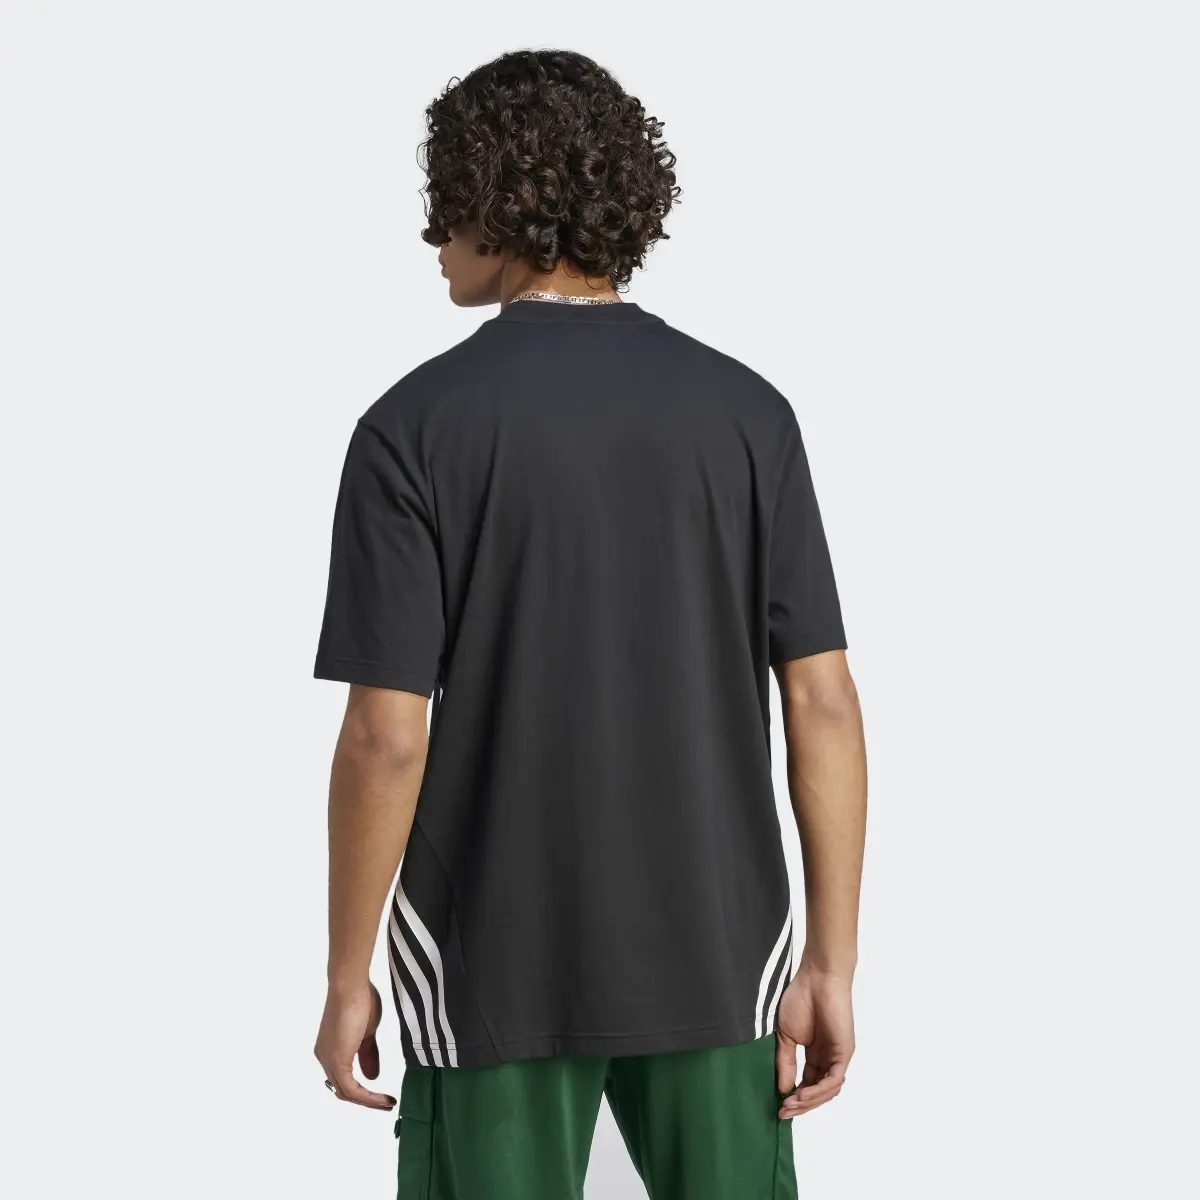 Adidas Future Icons 3-Stripes T-Shirt. 3